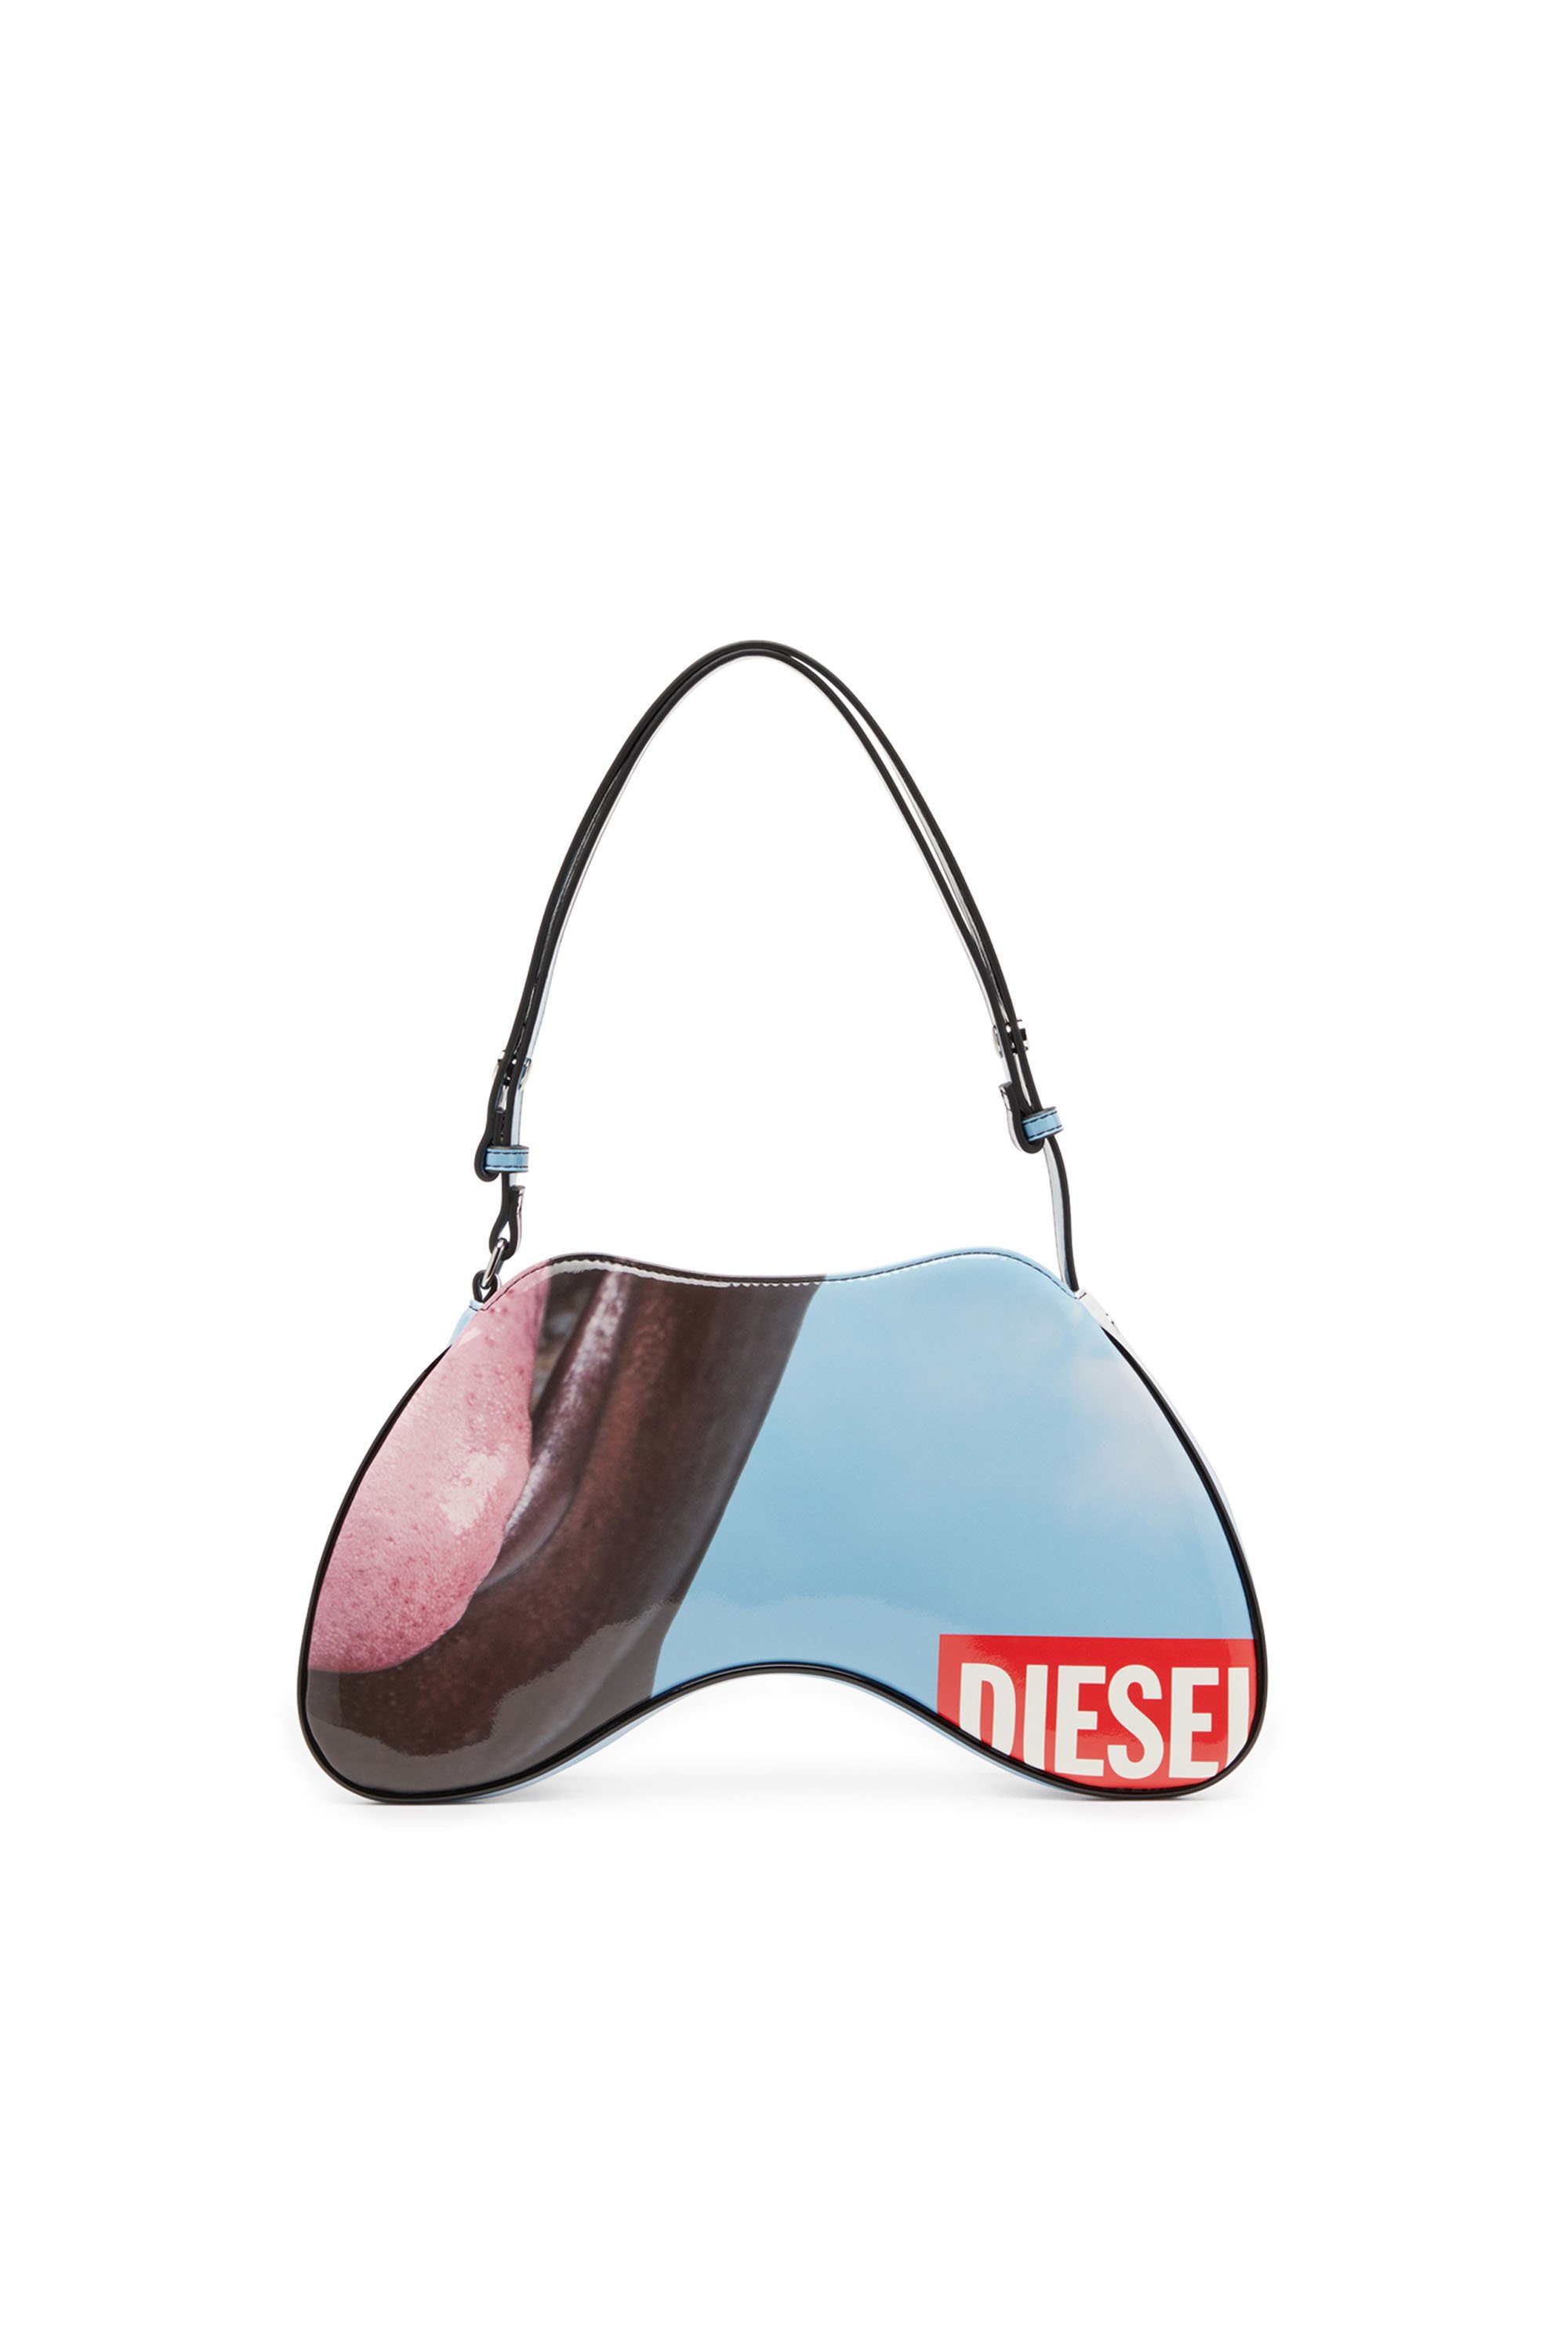 Diesel - PLAY SHOULDER, Female Play-Shoulder bag in printed glossy PU in Multicolor - Image 2